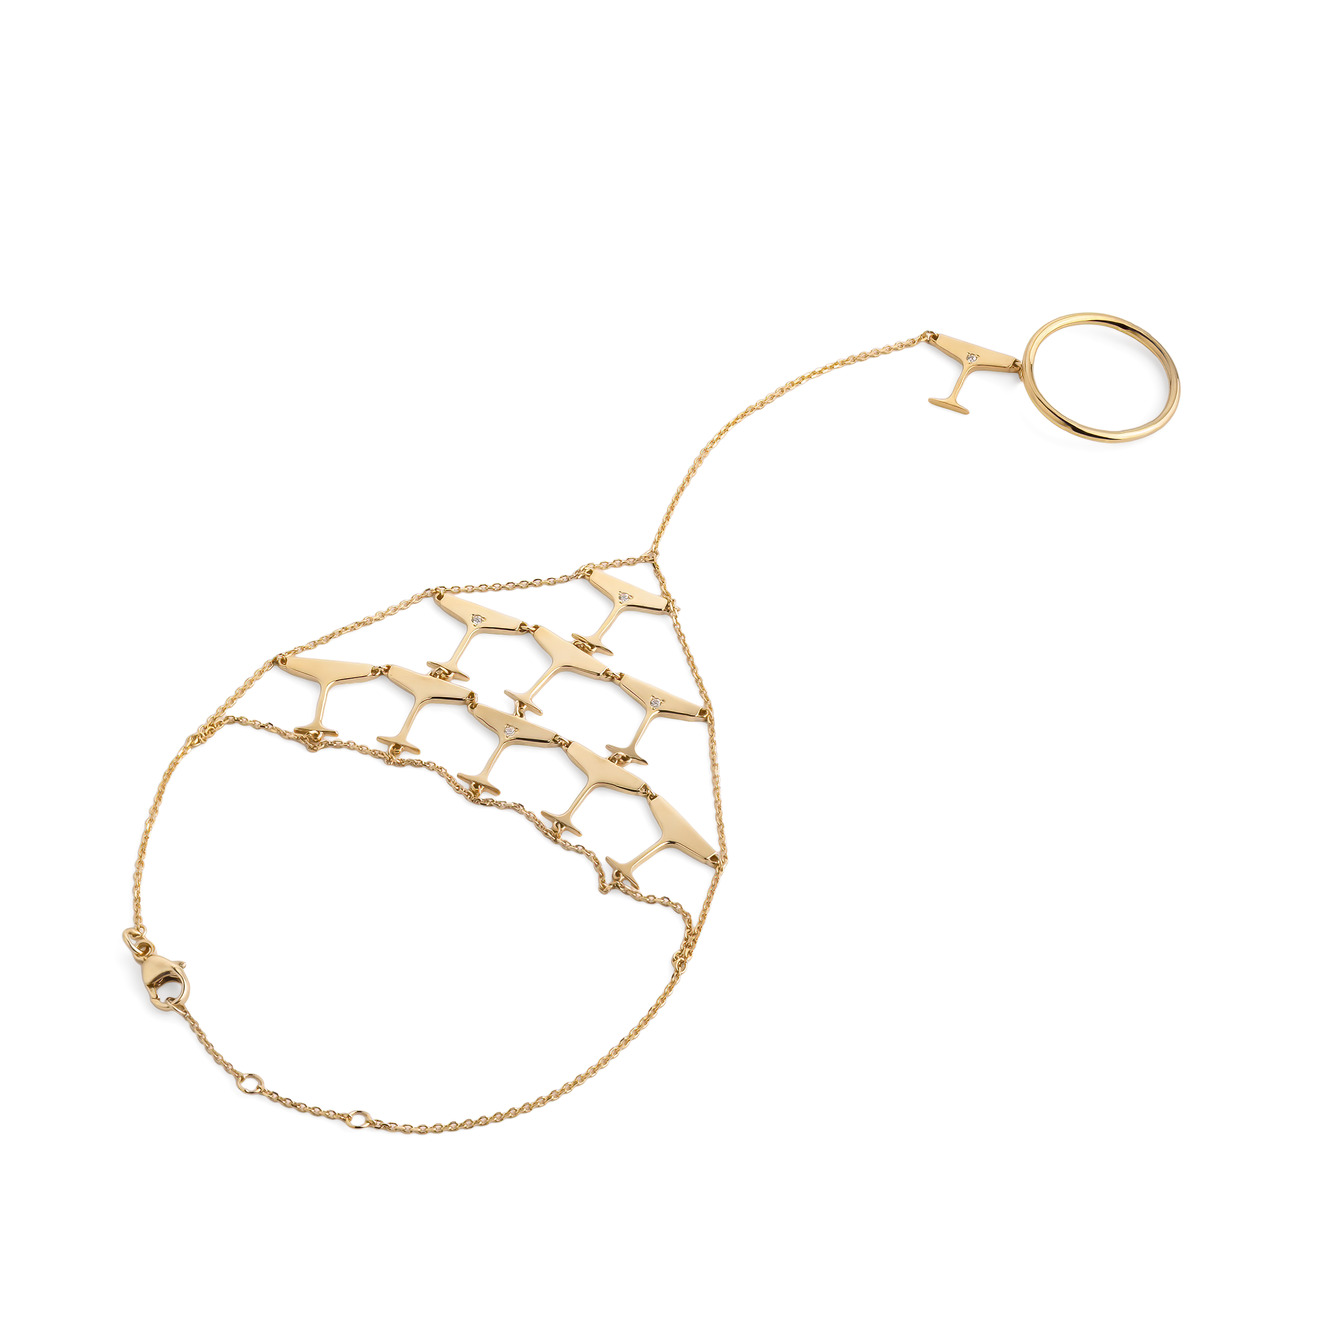 LUTA Jewelry Специальная коллекция Chandon x Poison Drop. Покрытый лимонным золотом браслет-слейв из серебра Sparkling luta jewelry колье sparkling из серебра